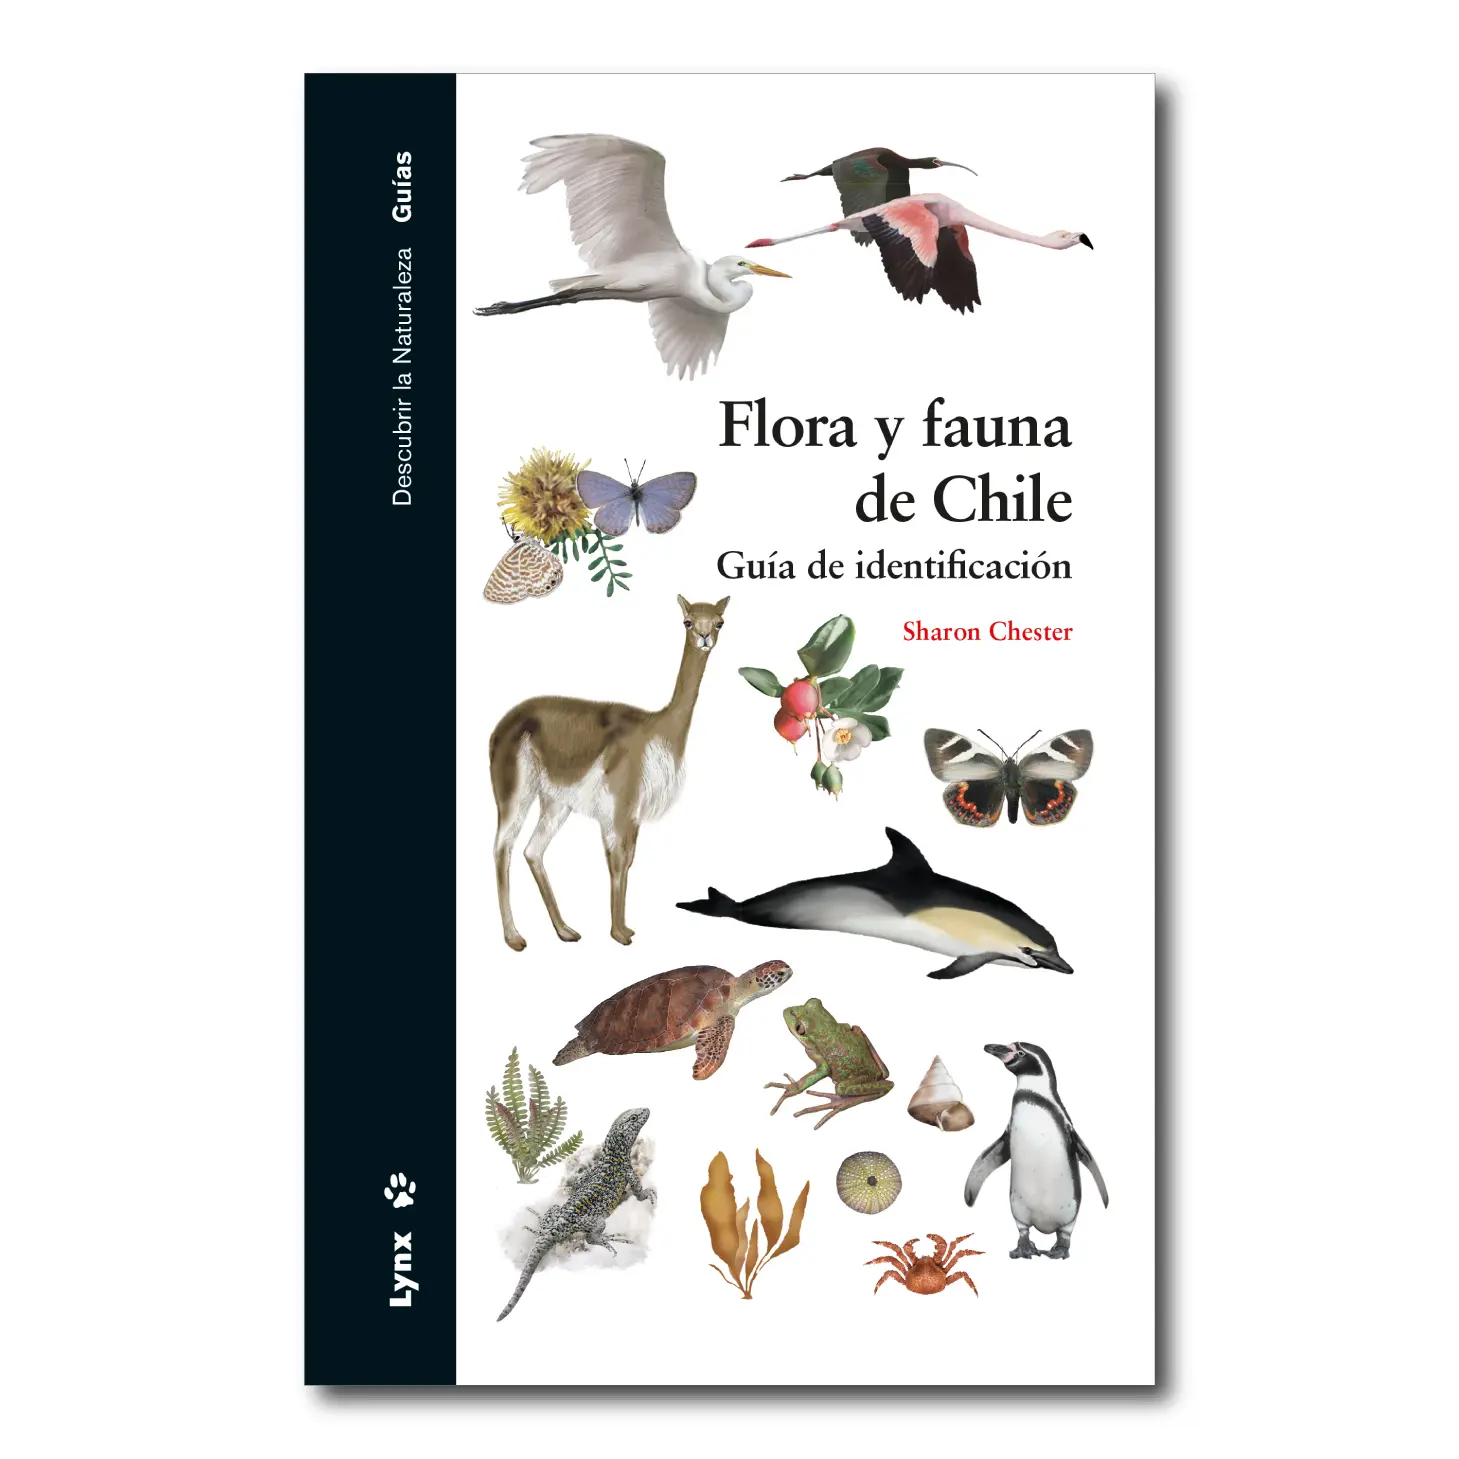 flora y fauna de chile resumen - Qué tipo de fauna hay en Chile